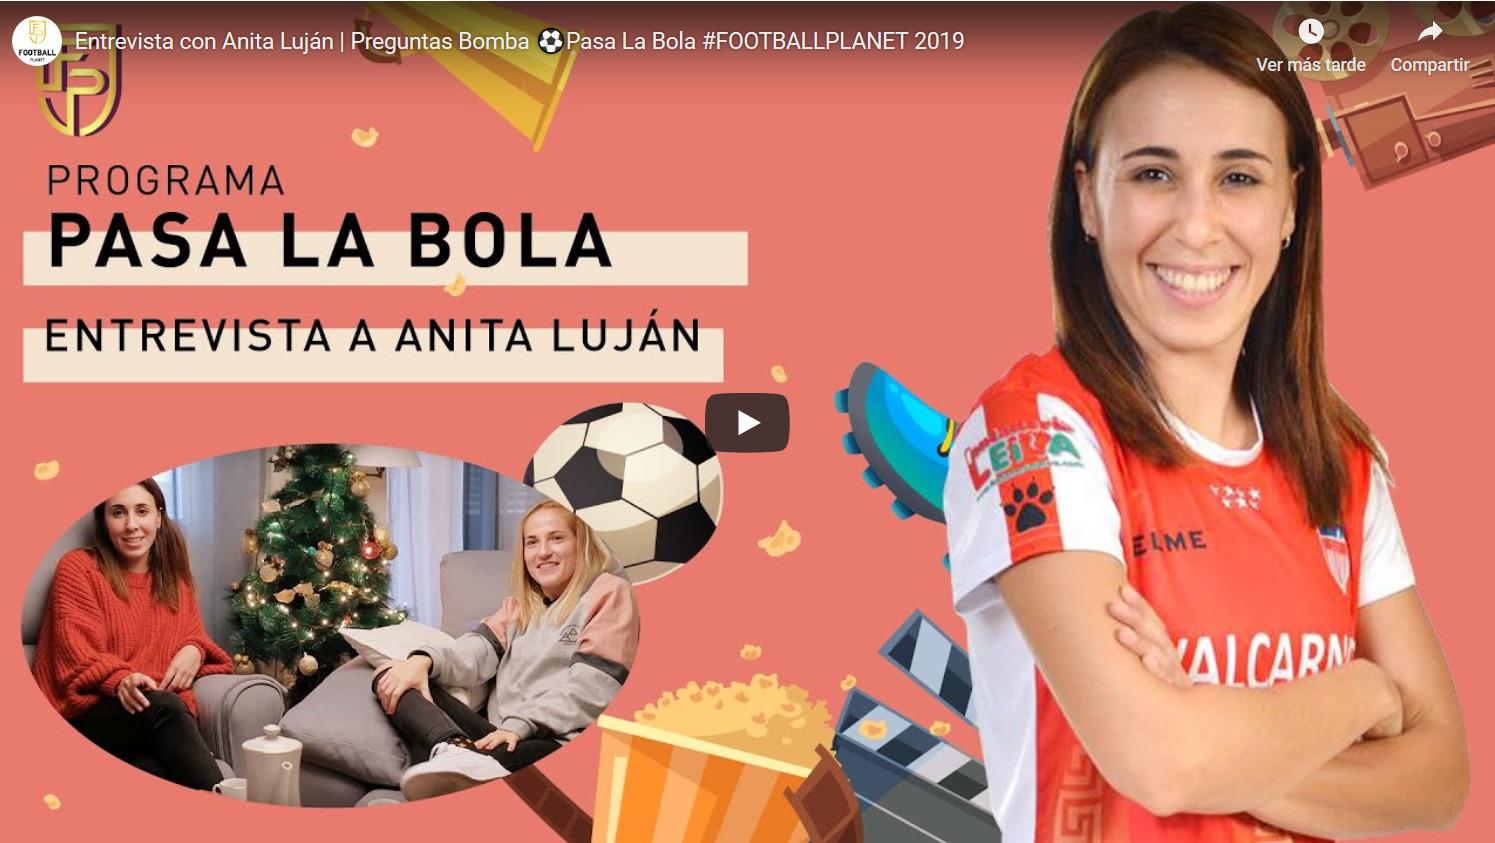 Entrevista a Ana Luján en el espacio "Pasa la Bola" del Canal Football Planet